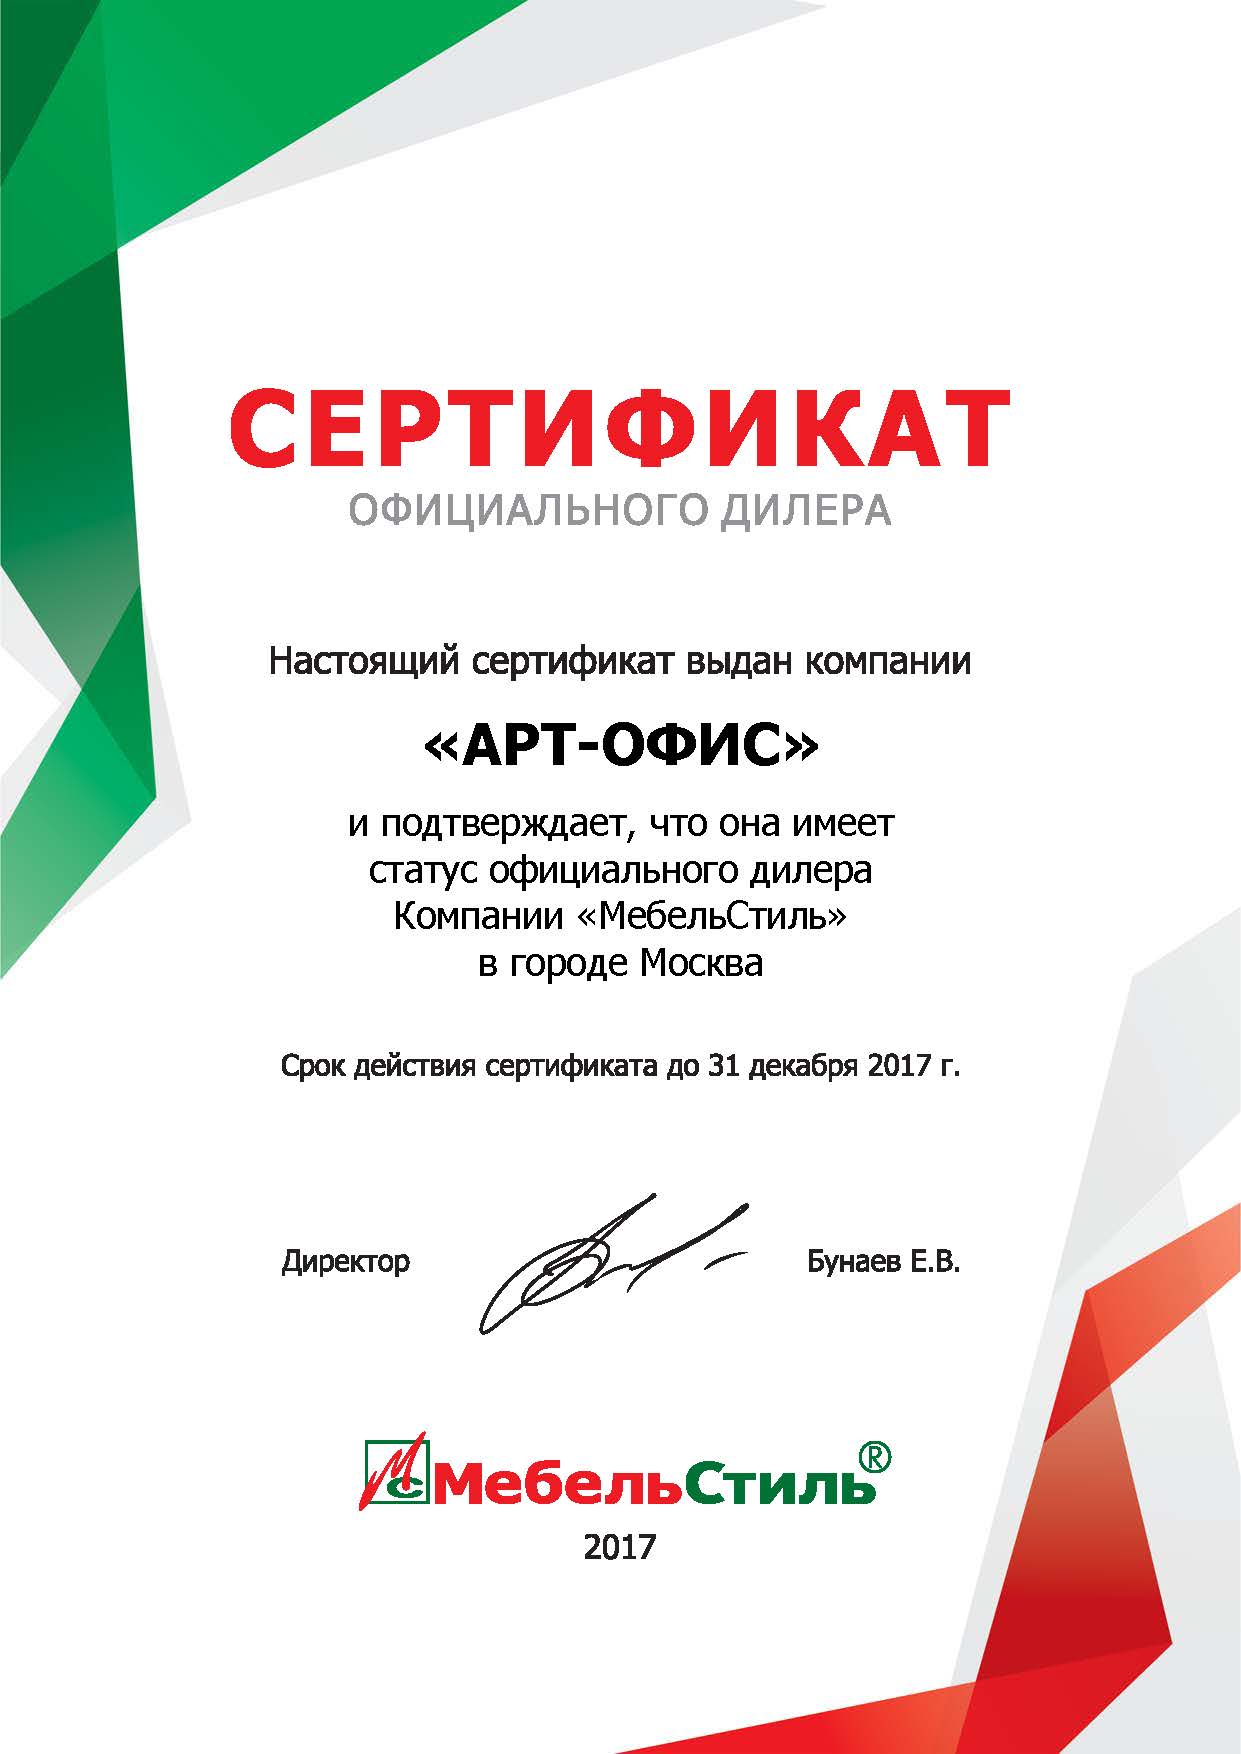 Сертификат от компании "Мебель Стиль"